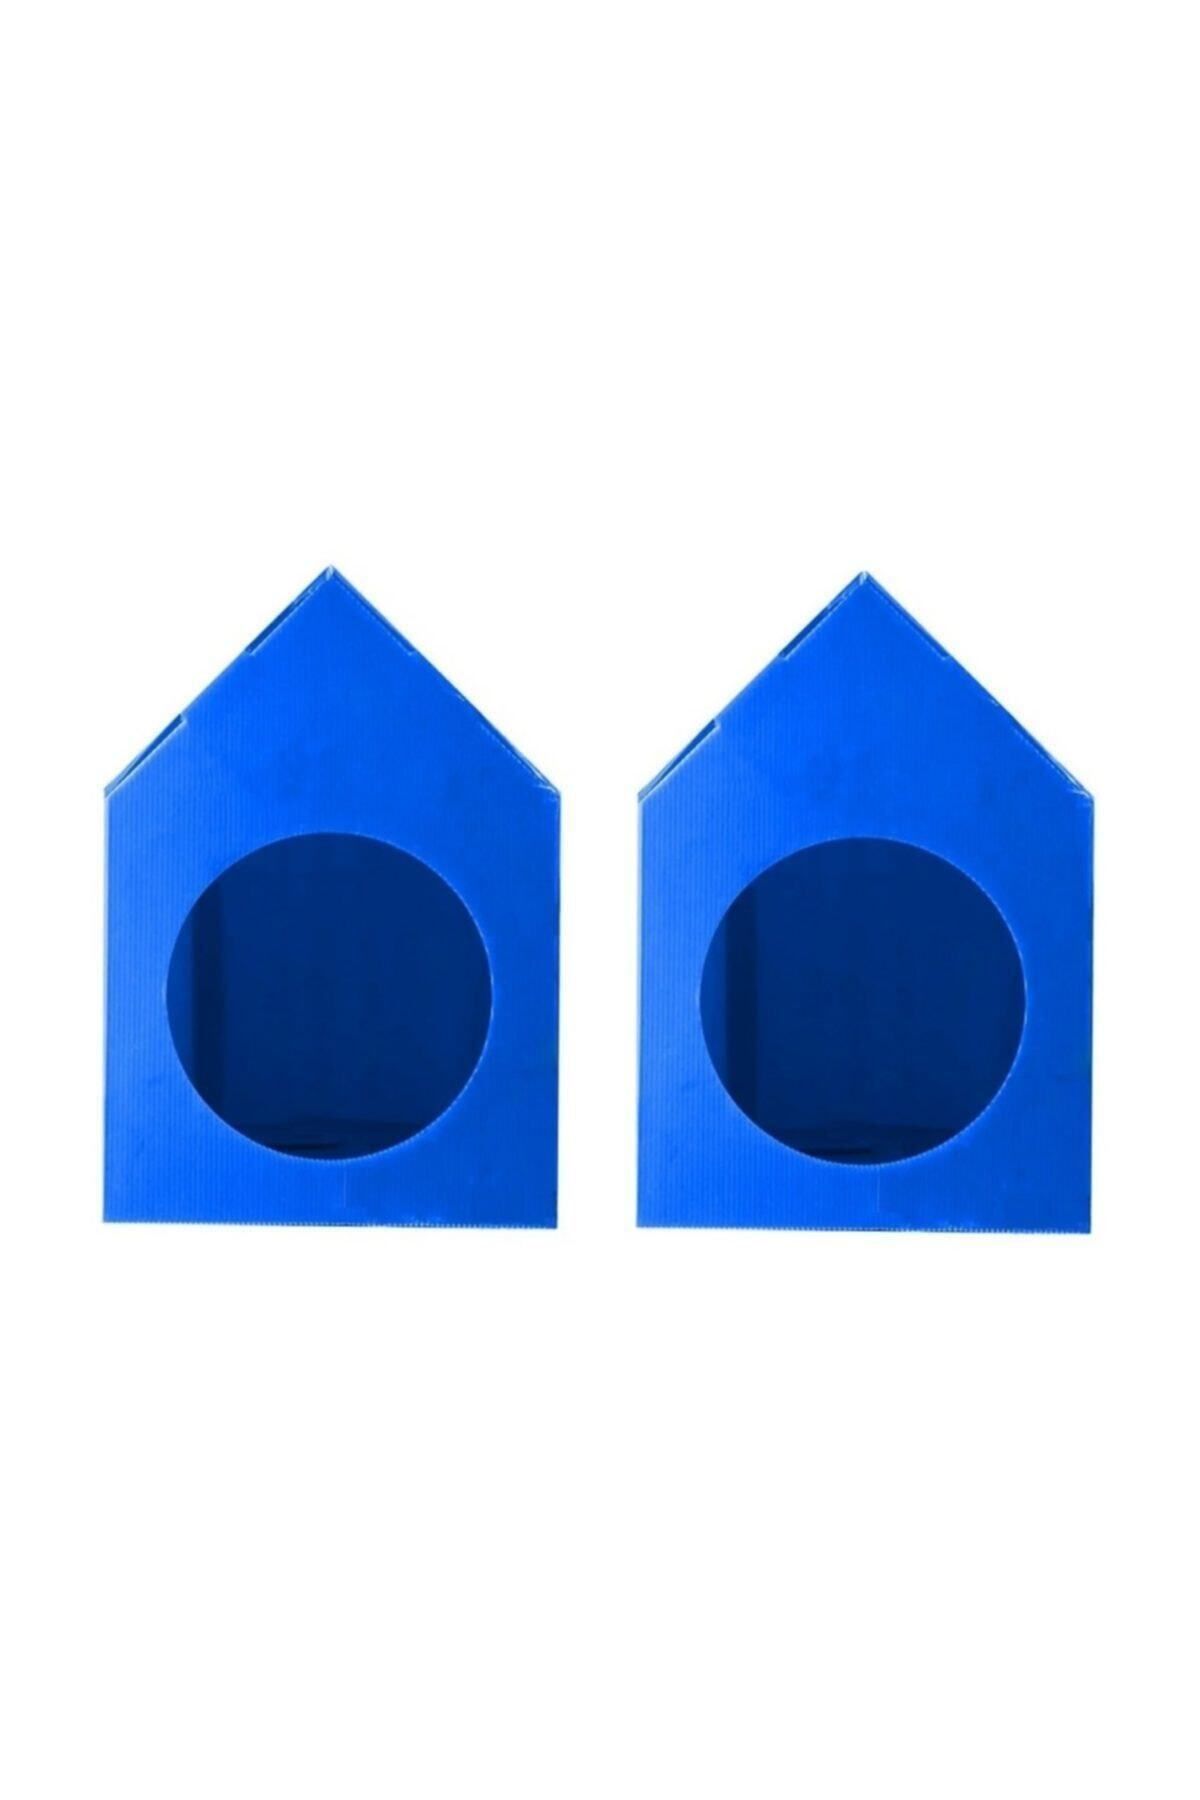 Mascot Su Geçirmez Mavi Renk  Demonte Plastik Kedi Evi - 2 Adet